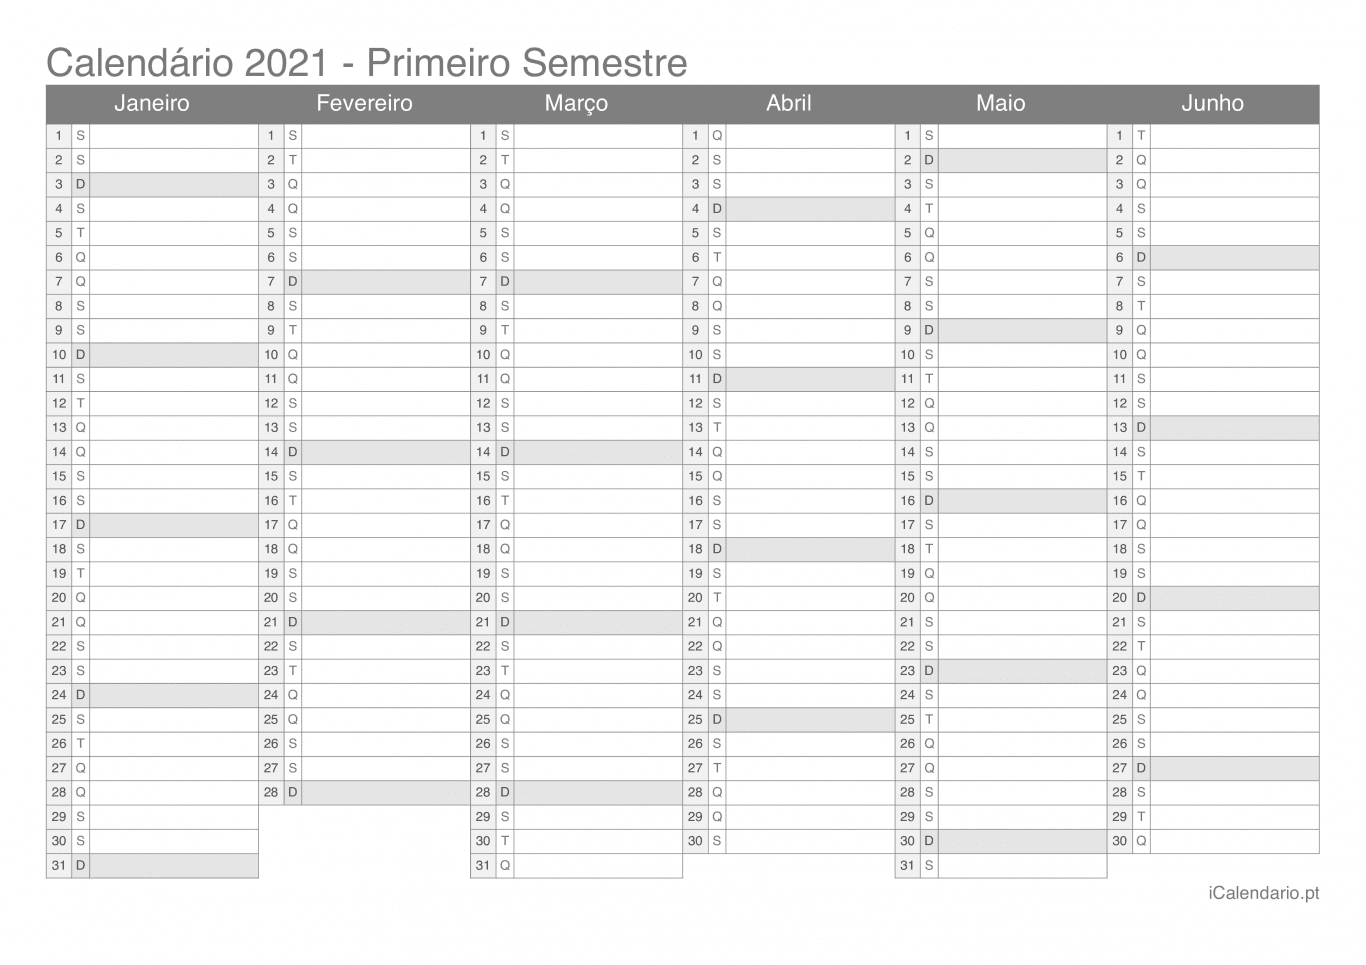 Calendário por semestre 2021